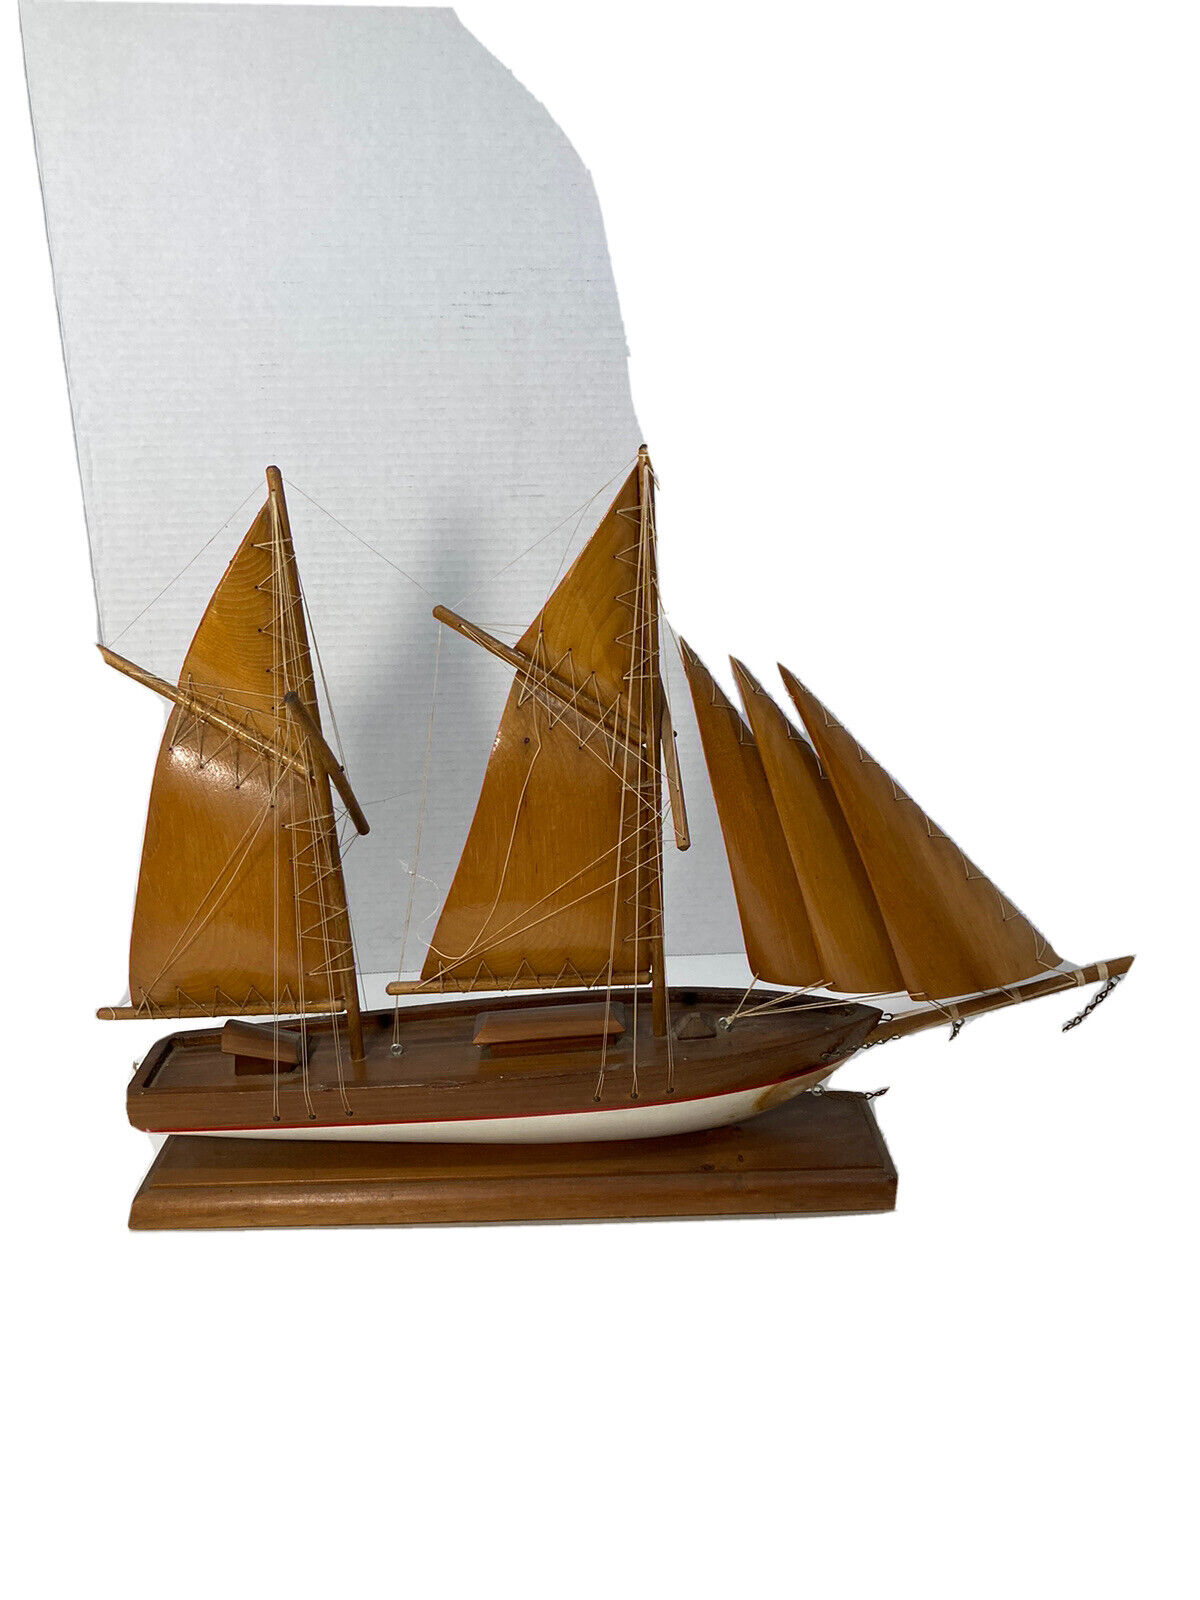 Vintage Wooden Fishing Schooner Model-Handmade-Wood Sails-20”x15”x3.5”